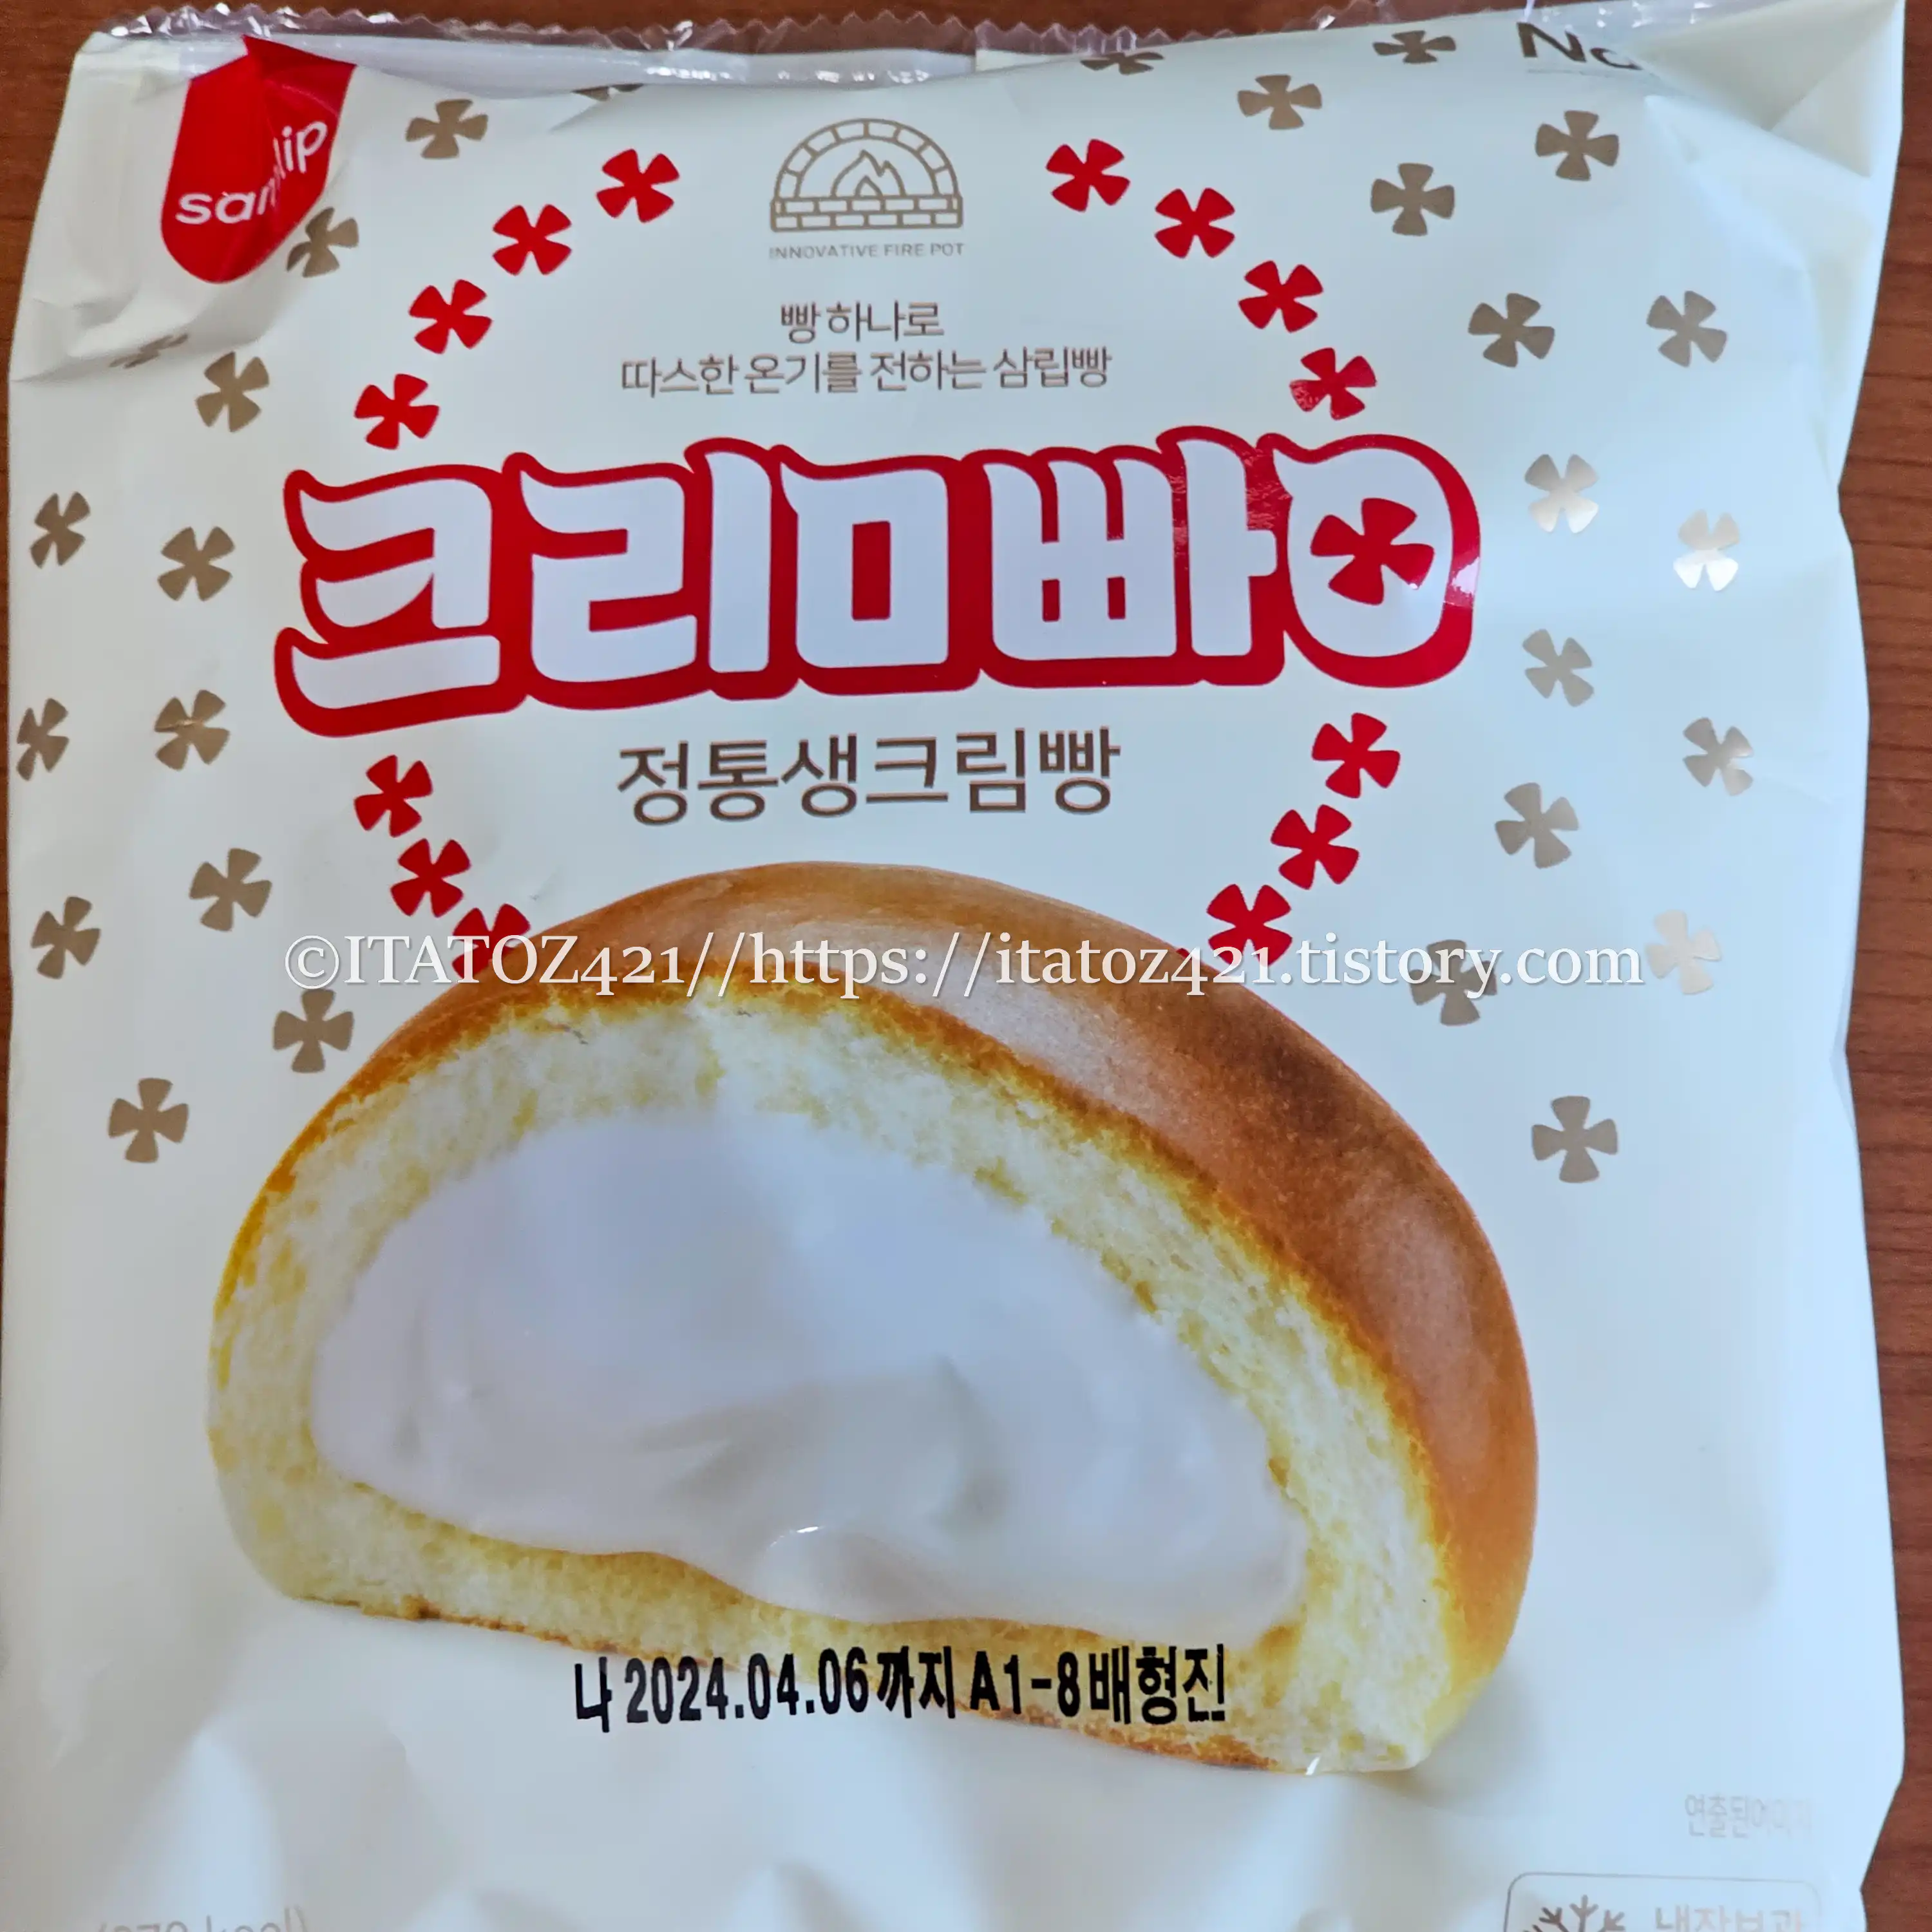 삼립 정통 생크림빵-cu 편의점 생크림빵-연세우유빵에 자극을 받은 걸까? 패키징